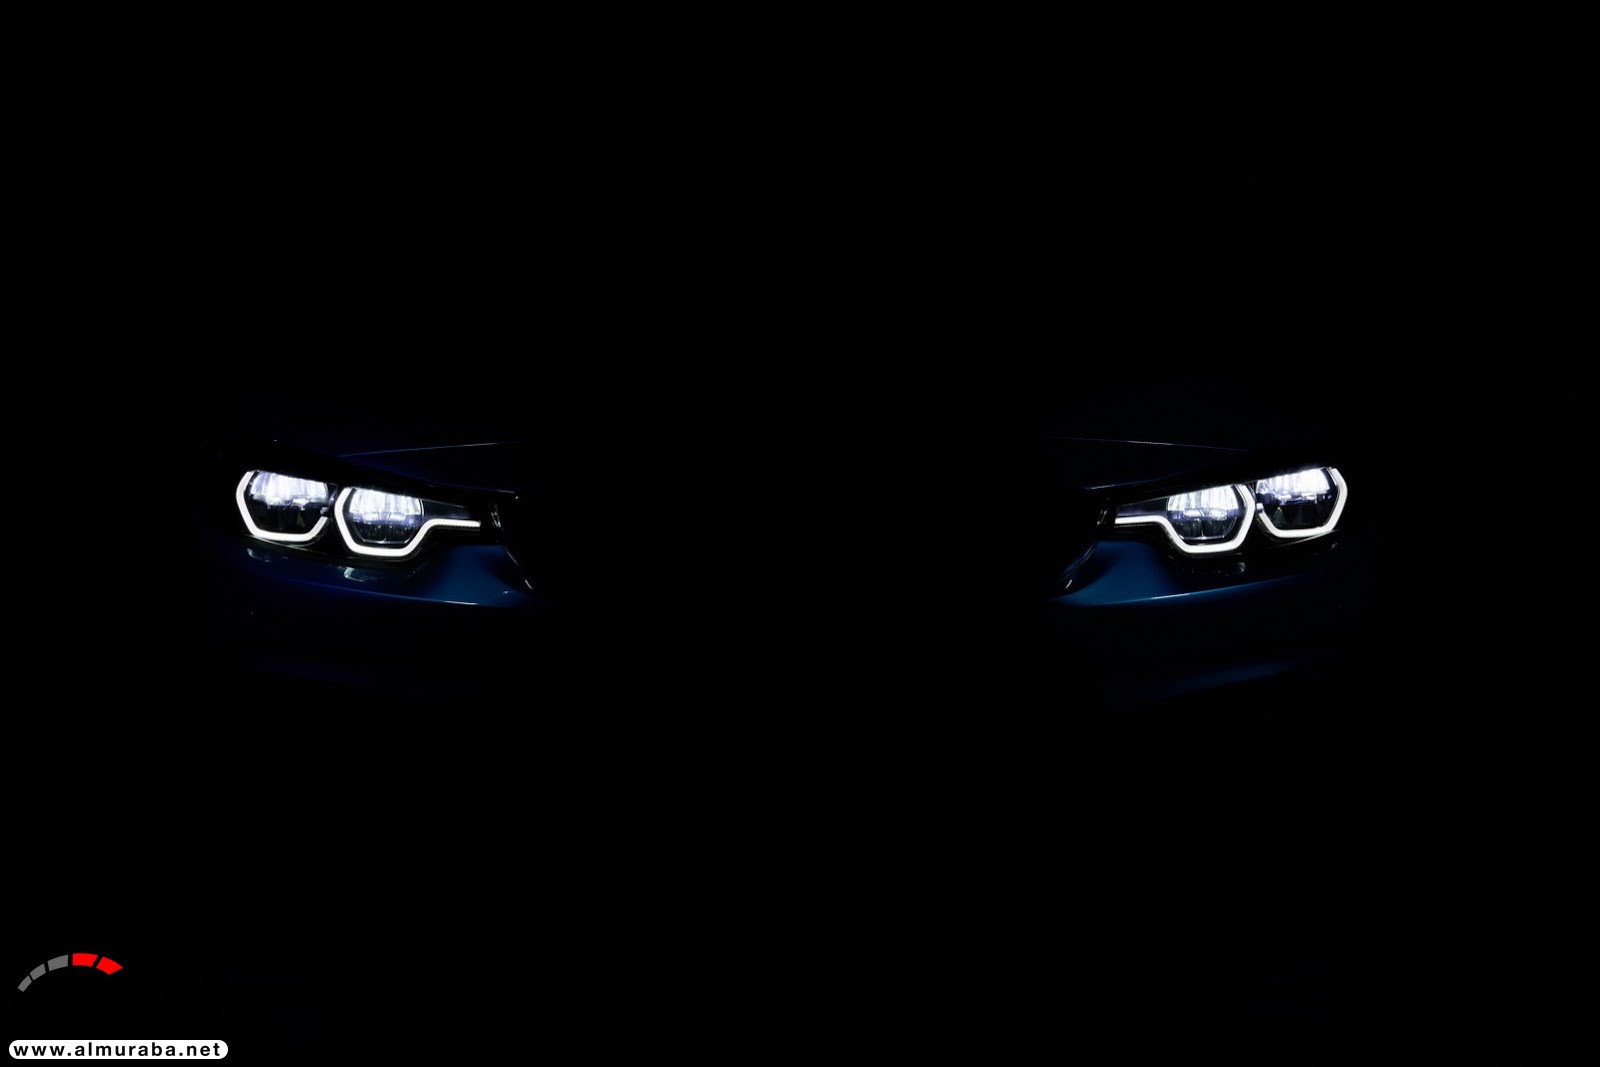 "بالصور" بي إم دبليو تكشف عن عائلة الفئة الرابعة 2018 بتحديثات منتصف العمر BMW 4-Series 385